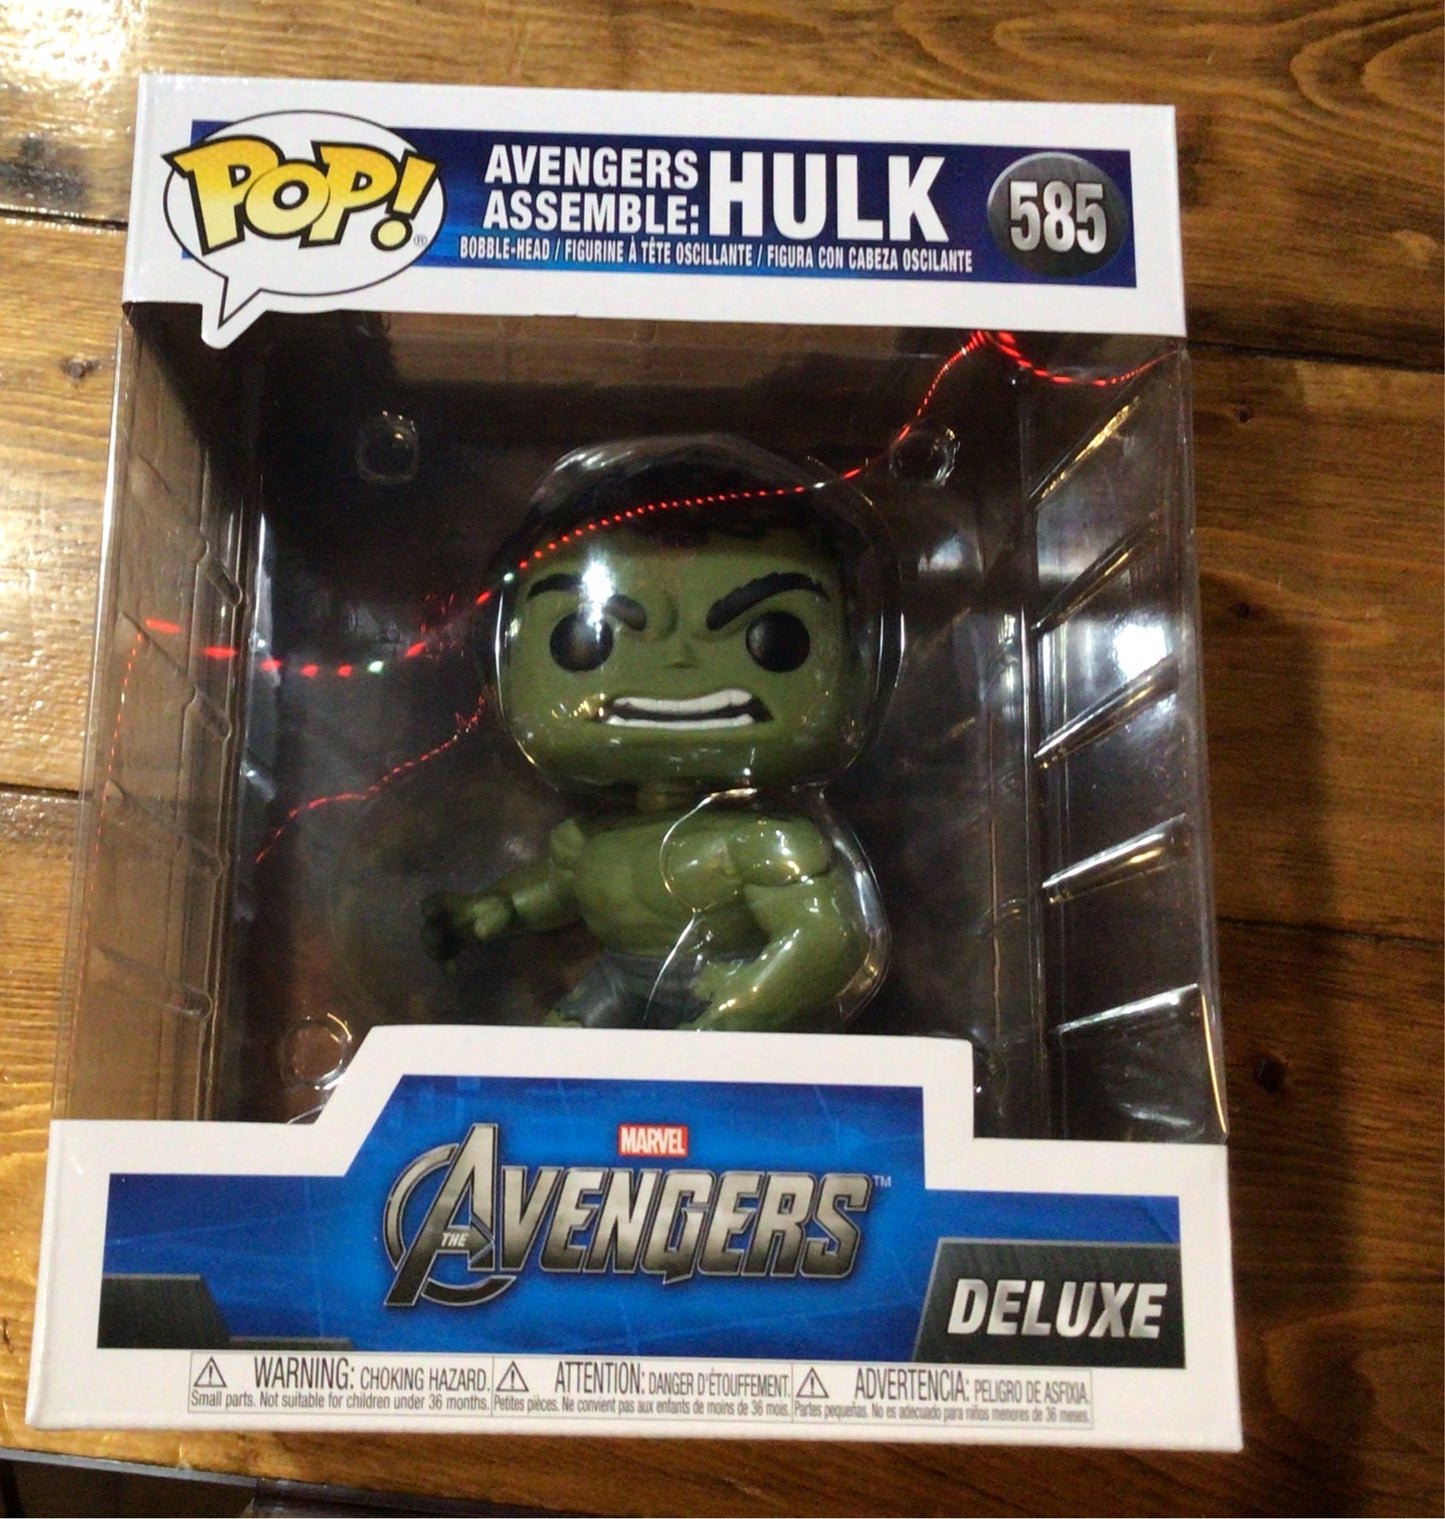 Marvel Avengers Assemble - Hulk #585 - Funko Pop! Deluxe Vinyl Figure